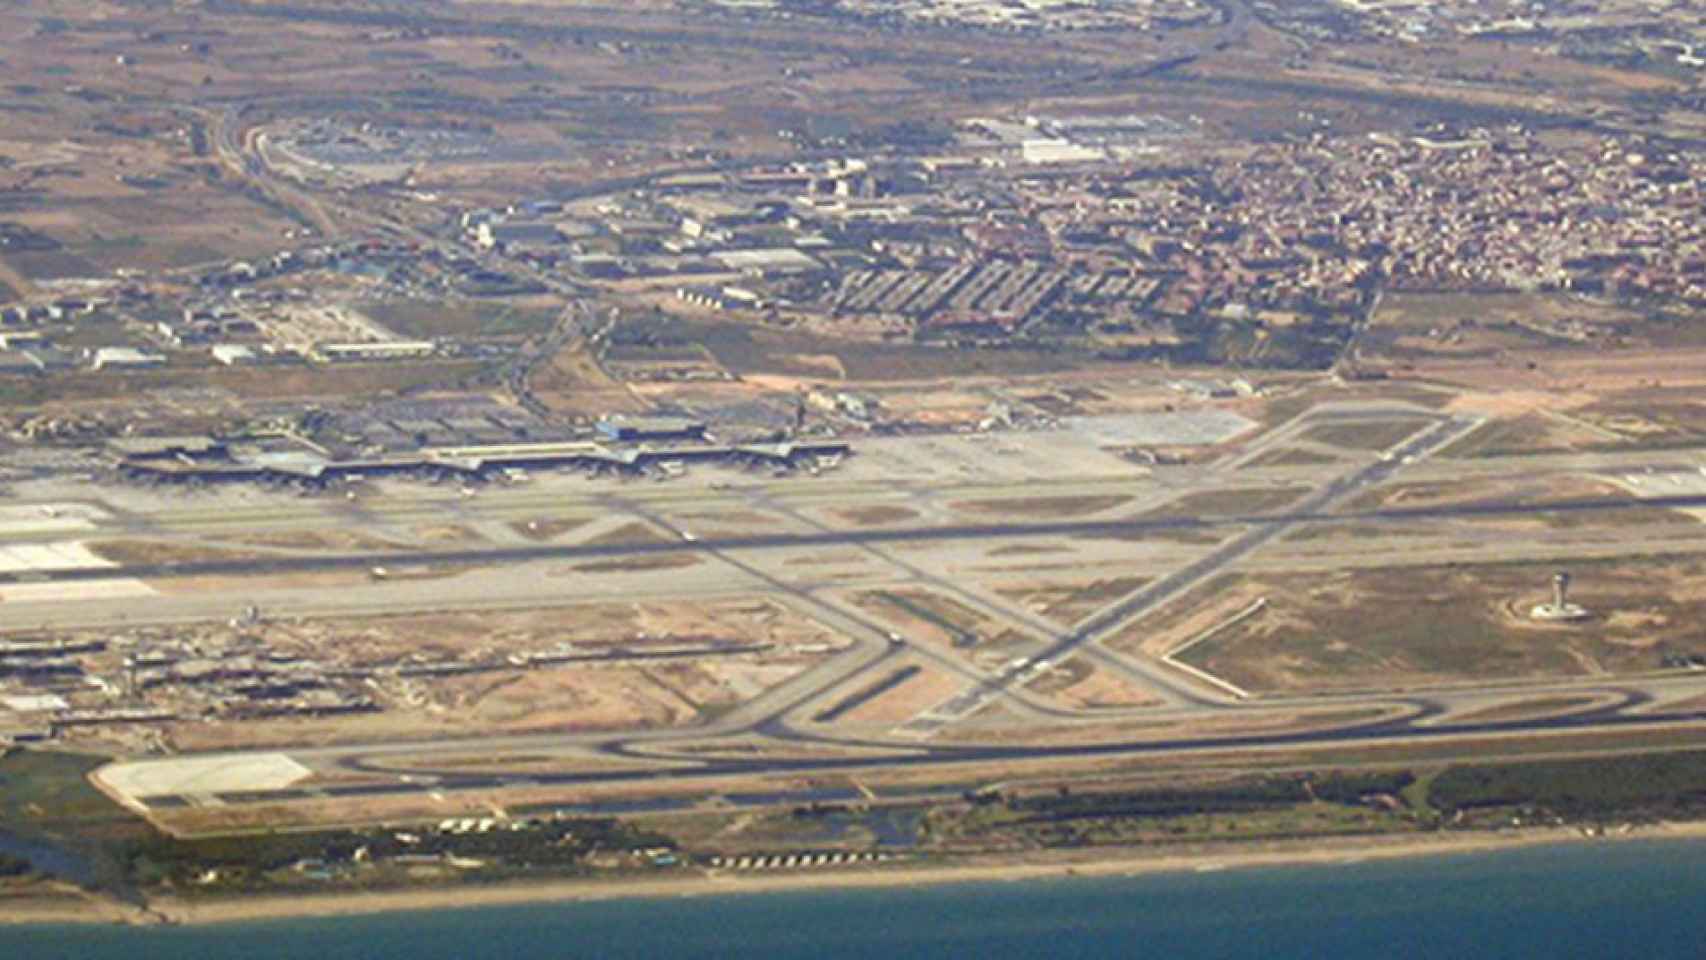 Vista aérea de El Prat de Llobregat / CG